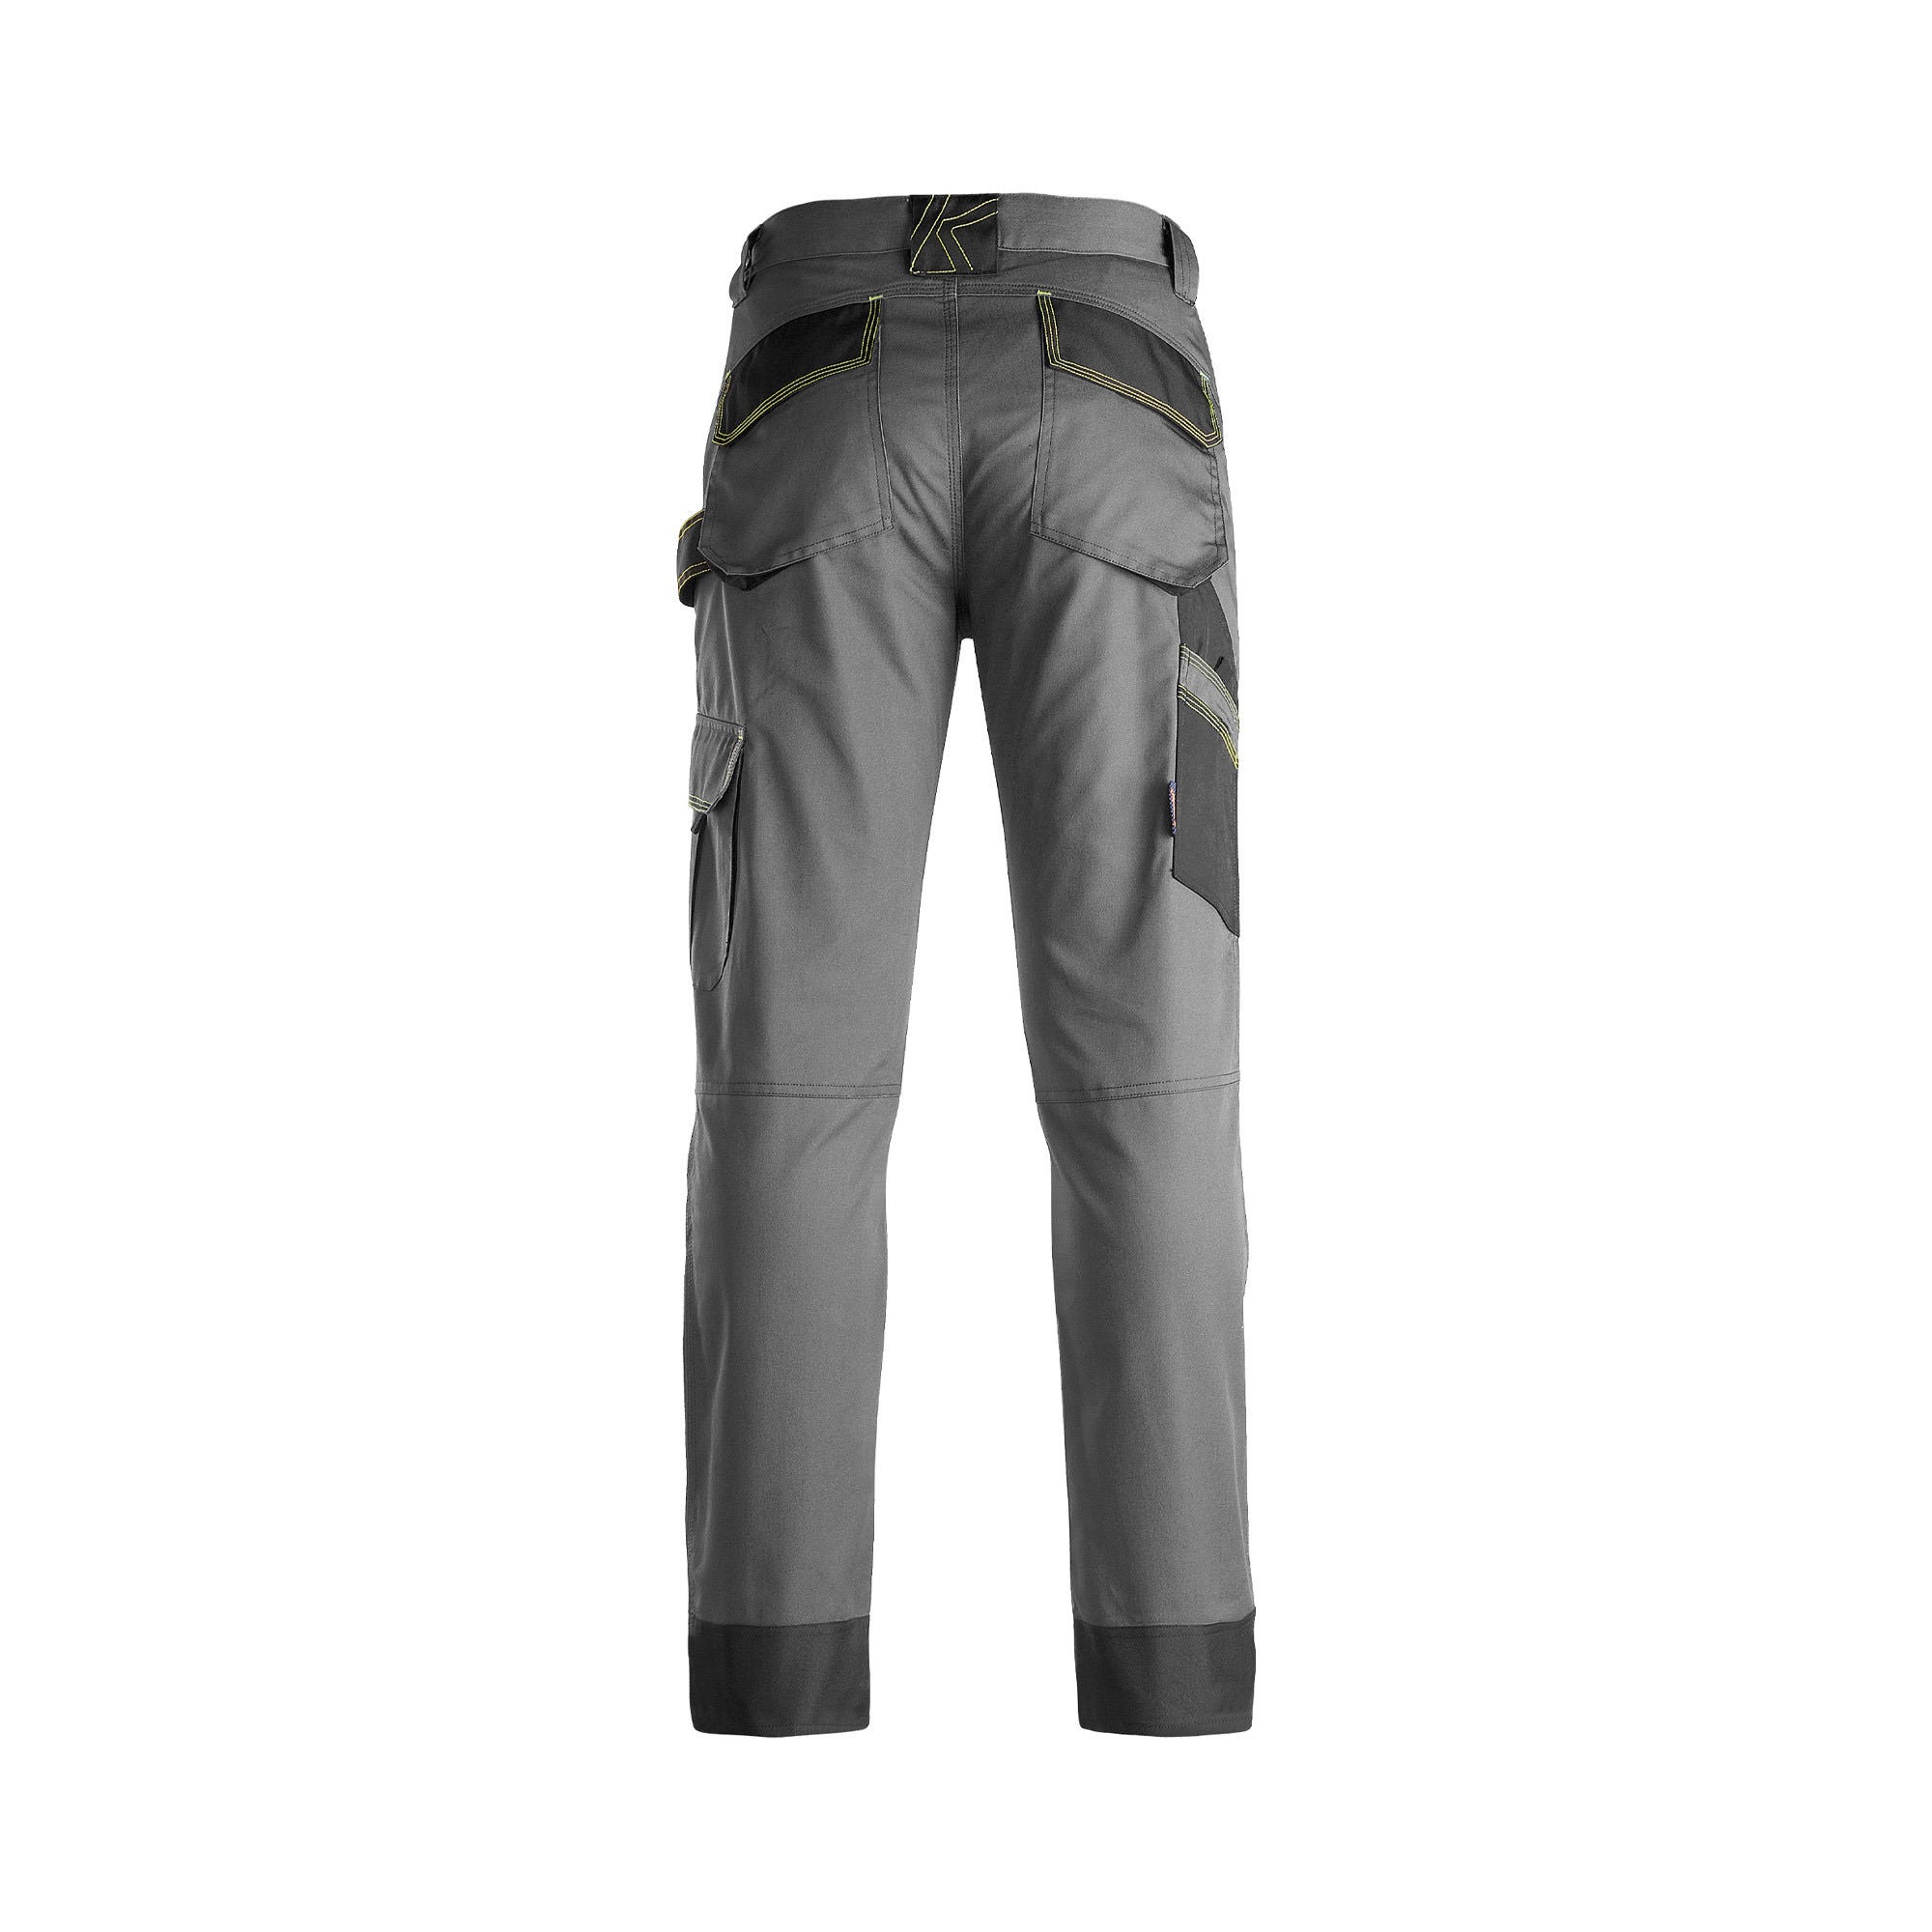 Pantalon de travail gris/noir T.M SPOT - KAPRIOL 1